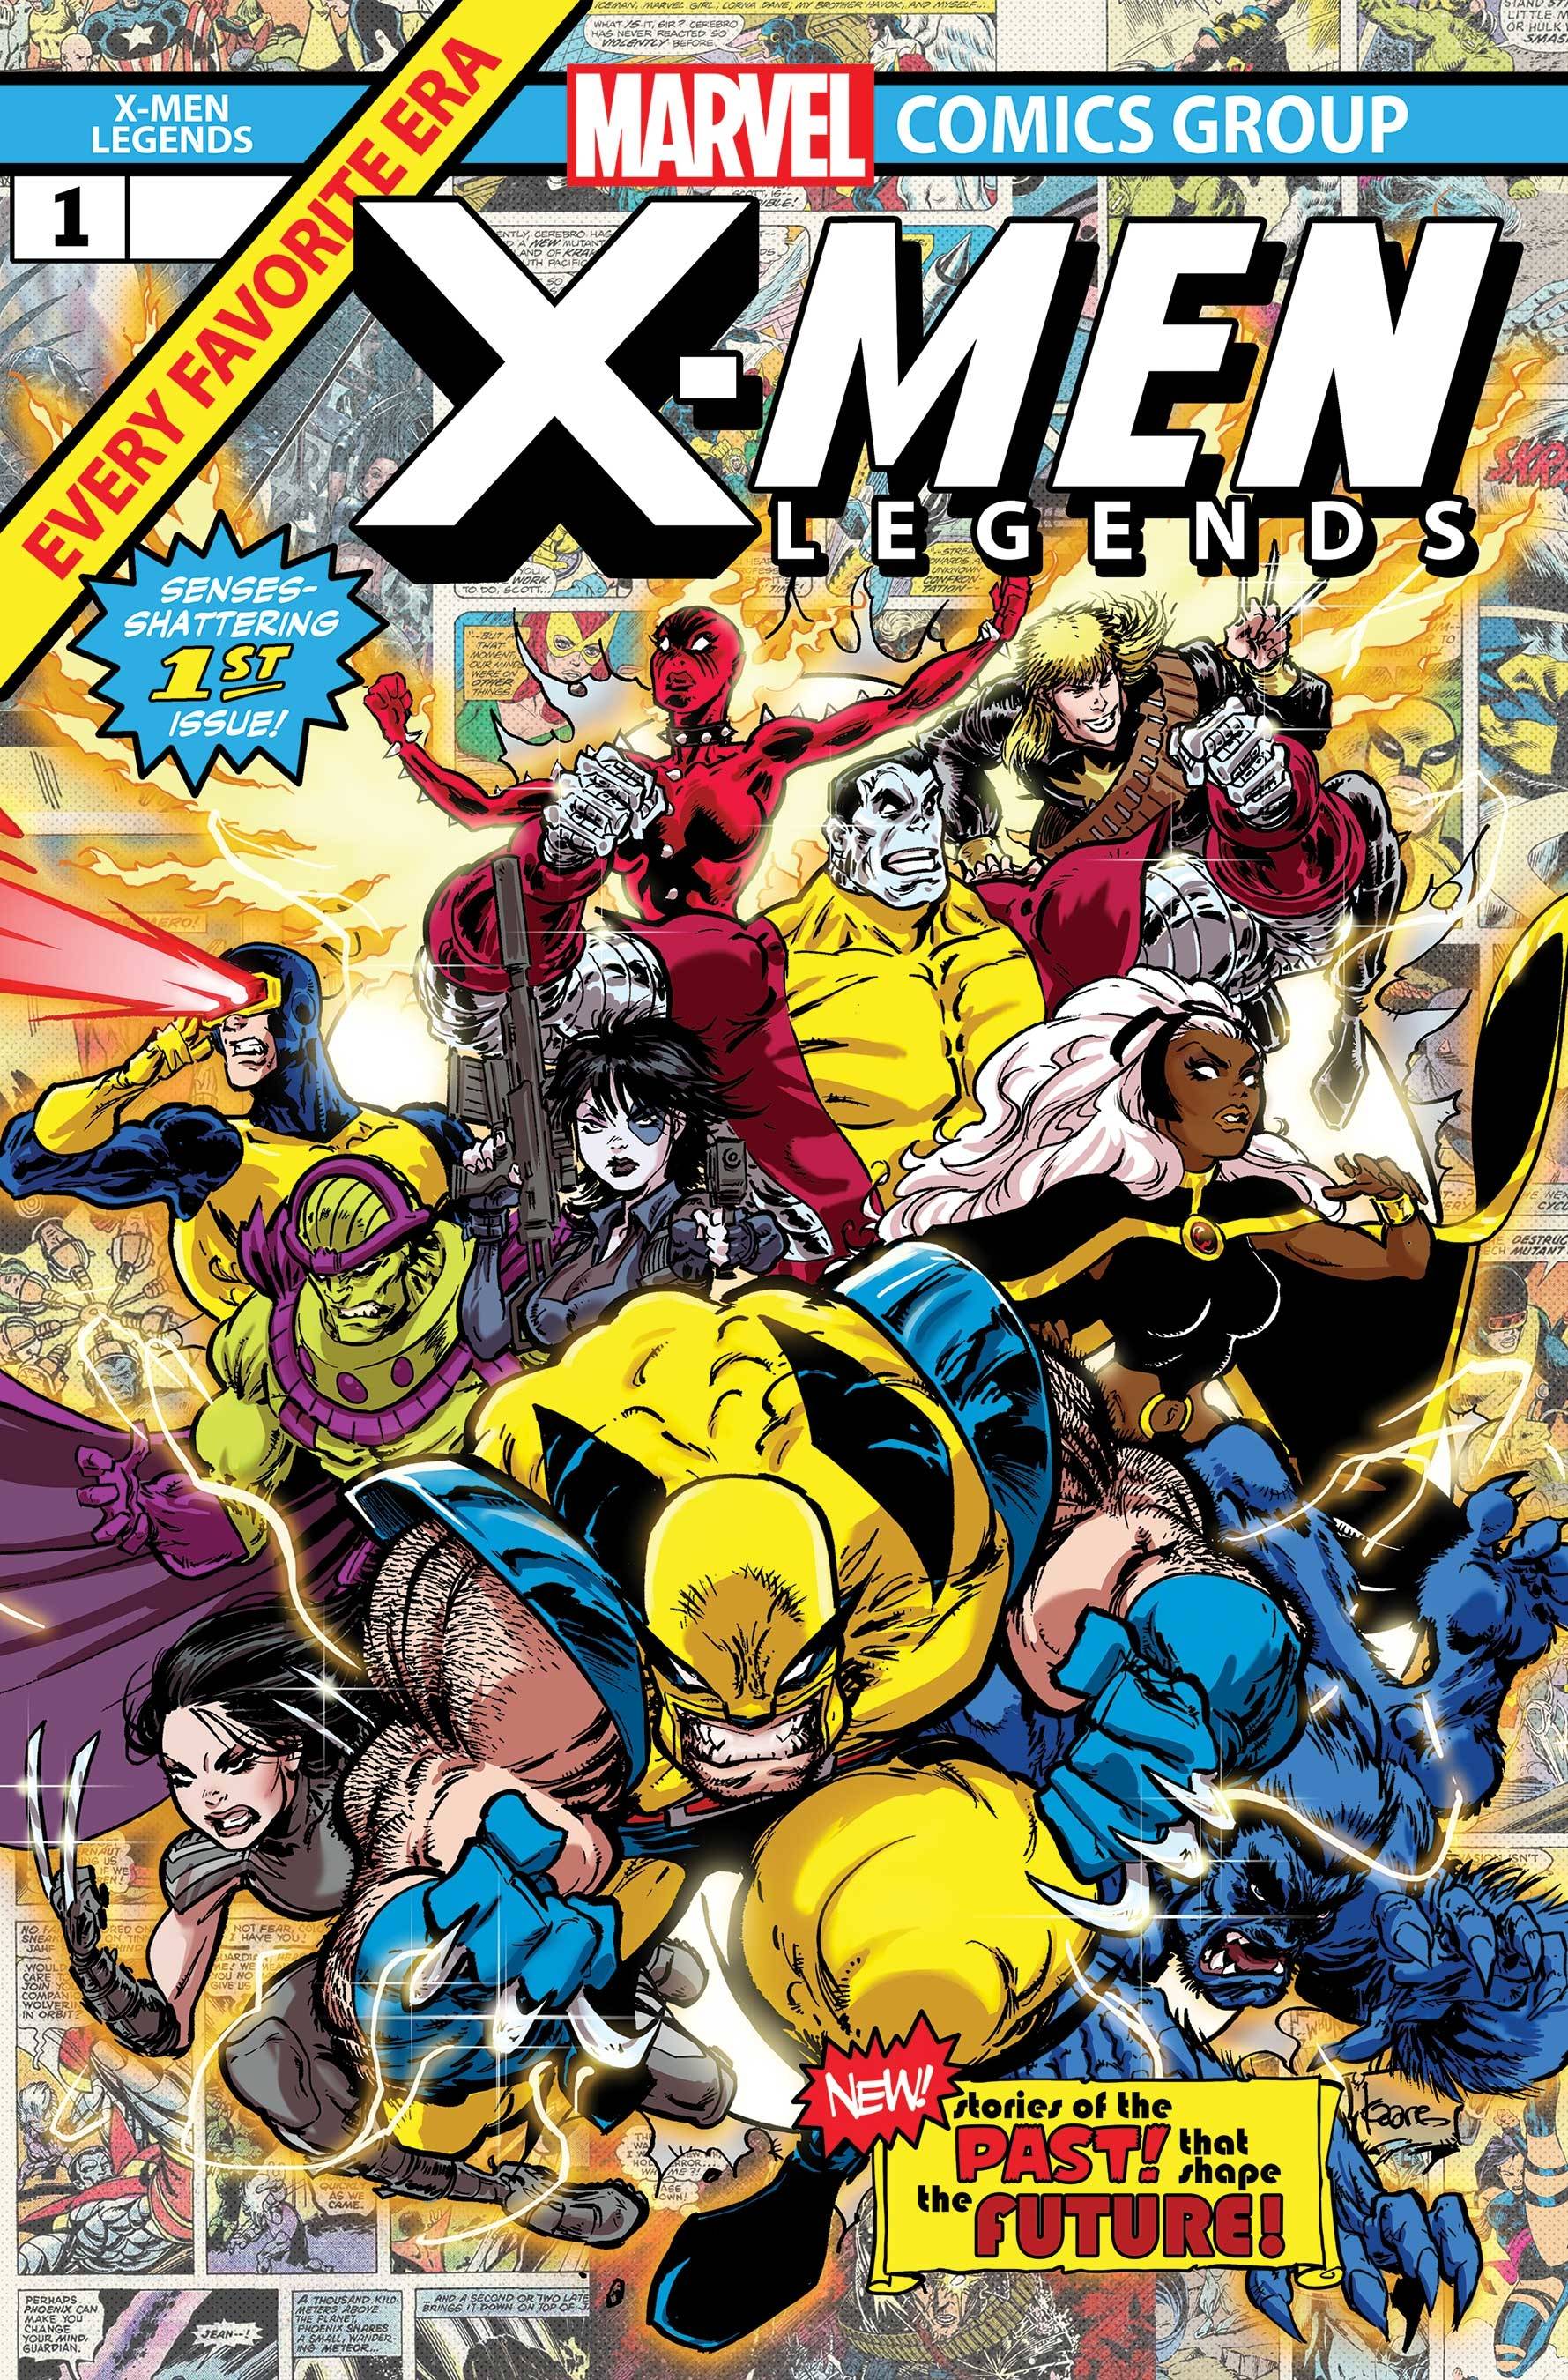 Comic Collection: X-Men Legends Vol 2 #1 - #4 Cover A